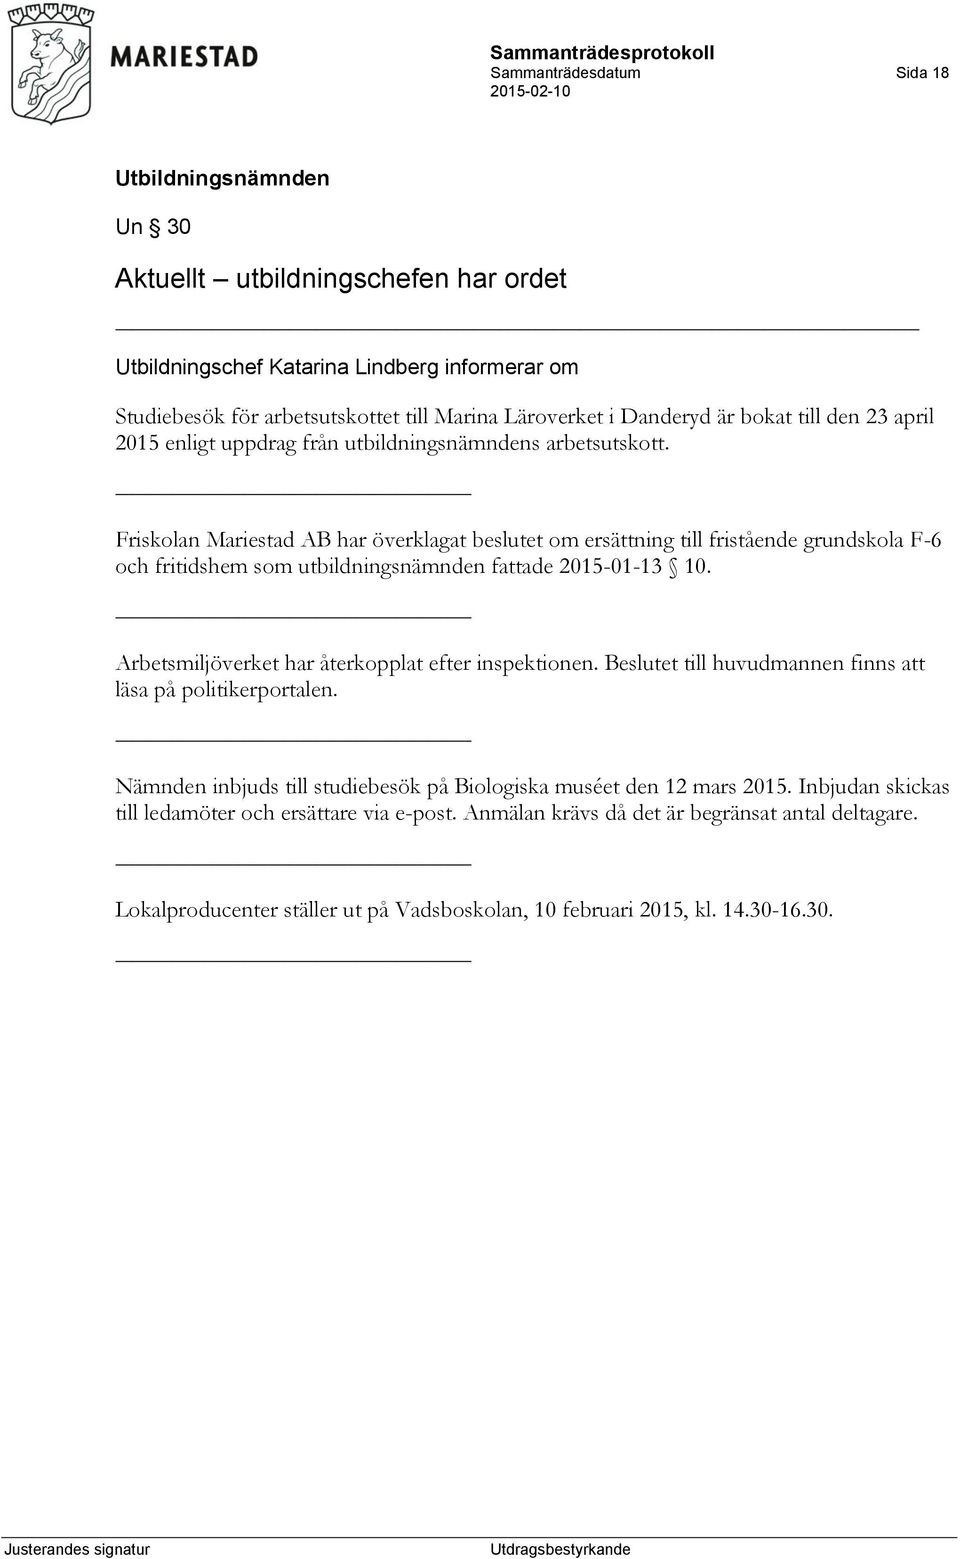 Friskolan Mariestad AB har överklagat beslutet om ersättning till fristående grundskola F-6 och fritidshem som utbildningsnämnden fattade 2015-01-13 10.